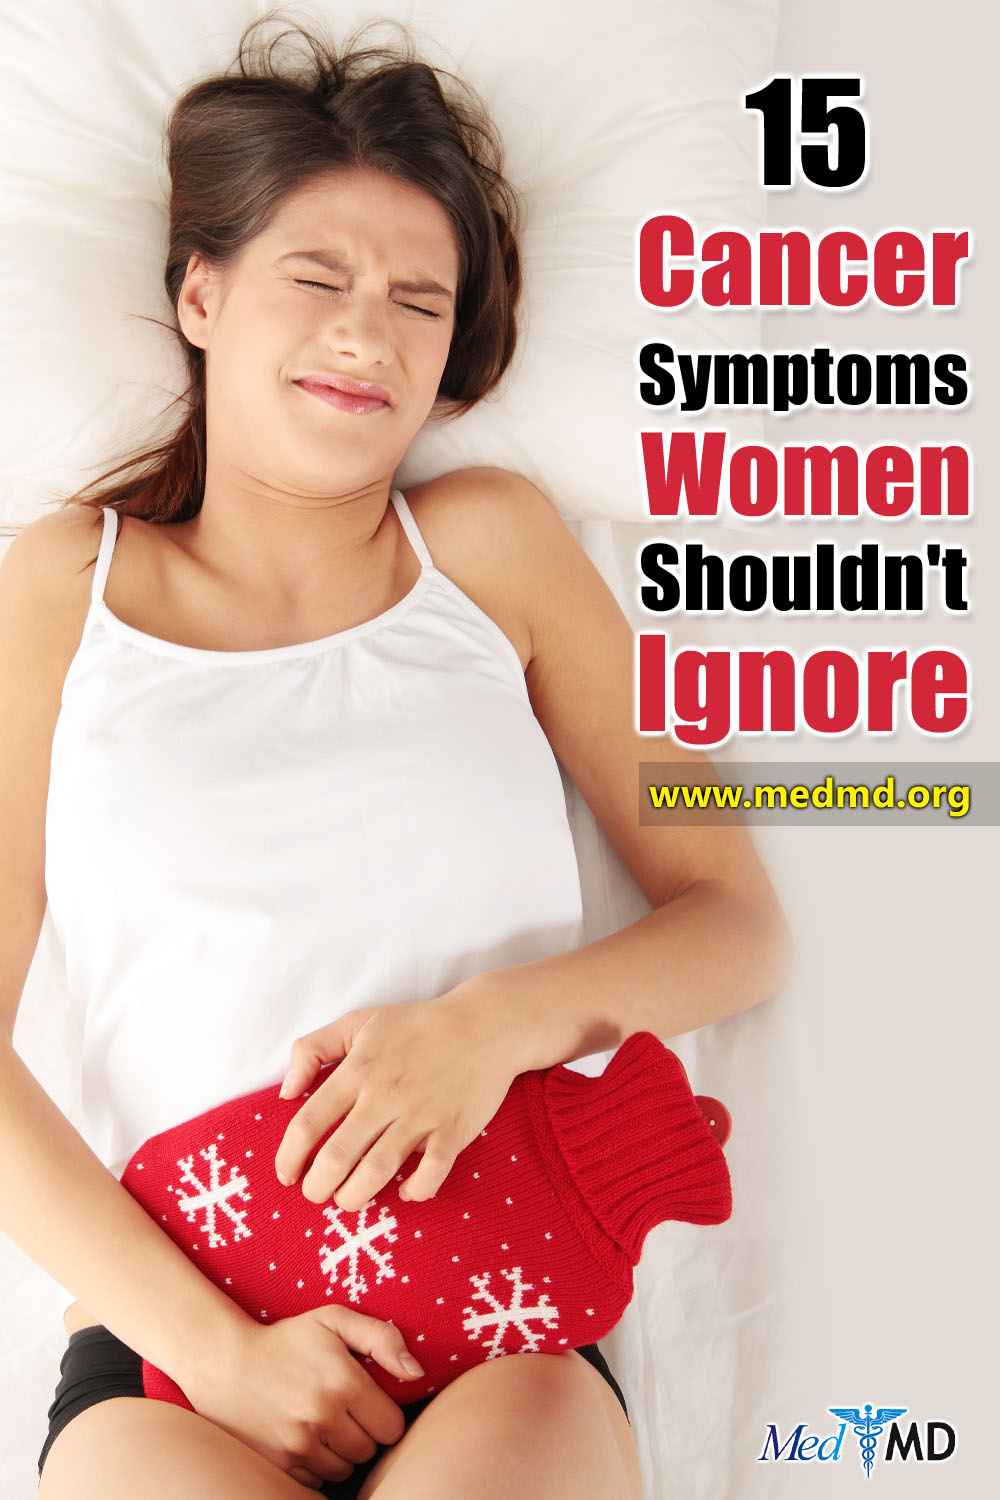 Cancer Symptoms in Women